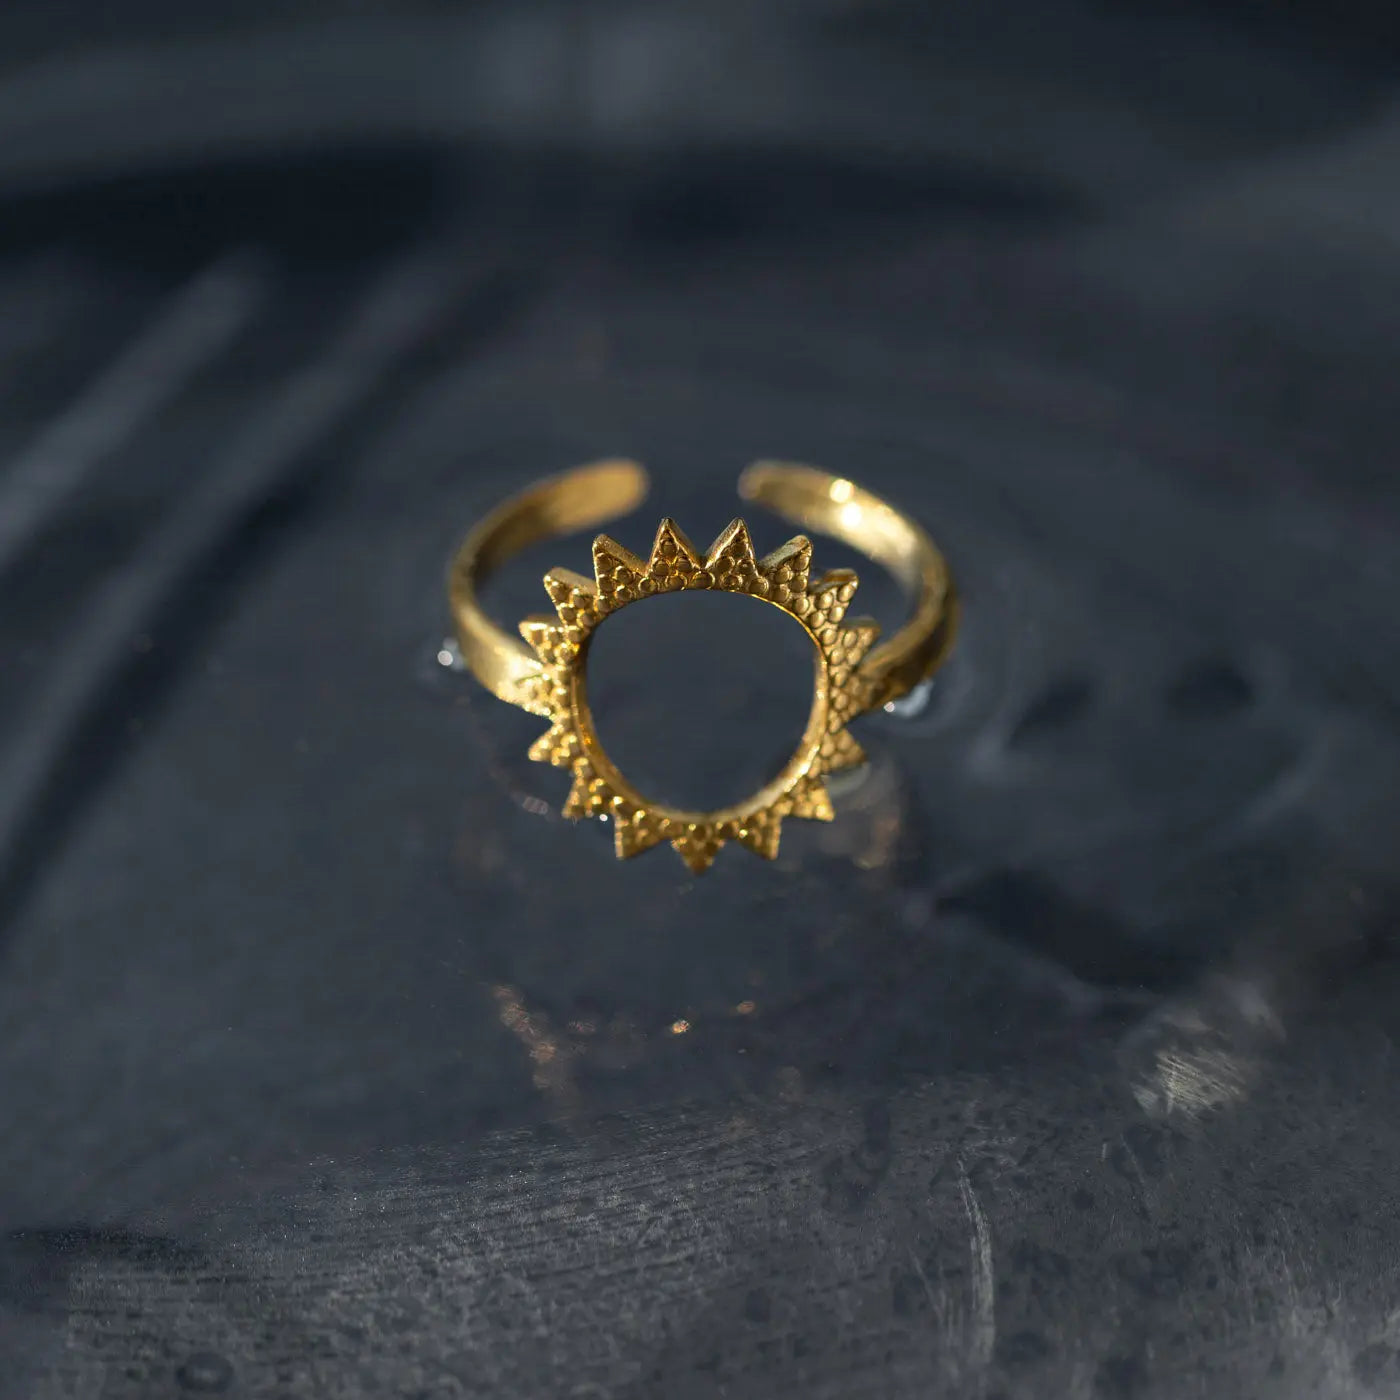 Hailey - Grande anello solare in acciaio inossidabile